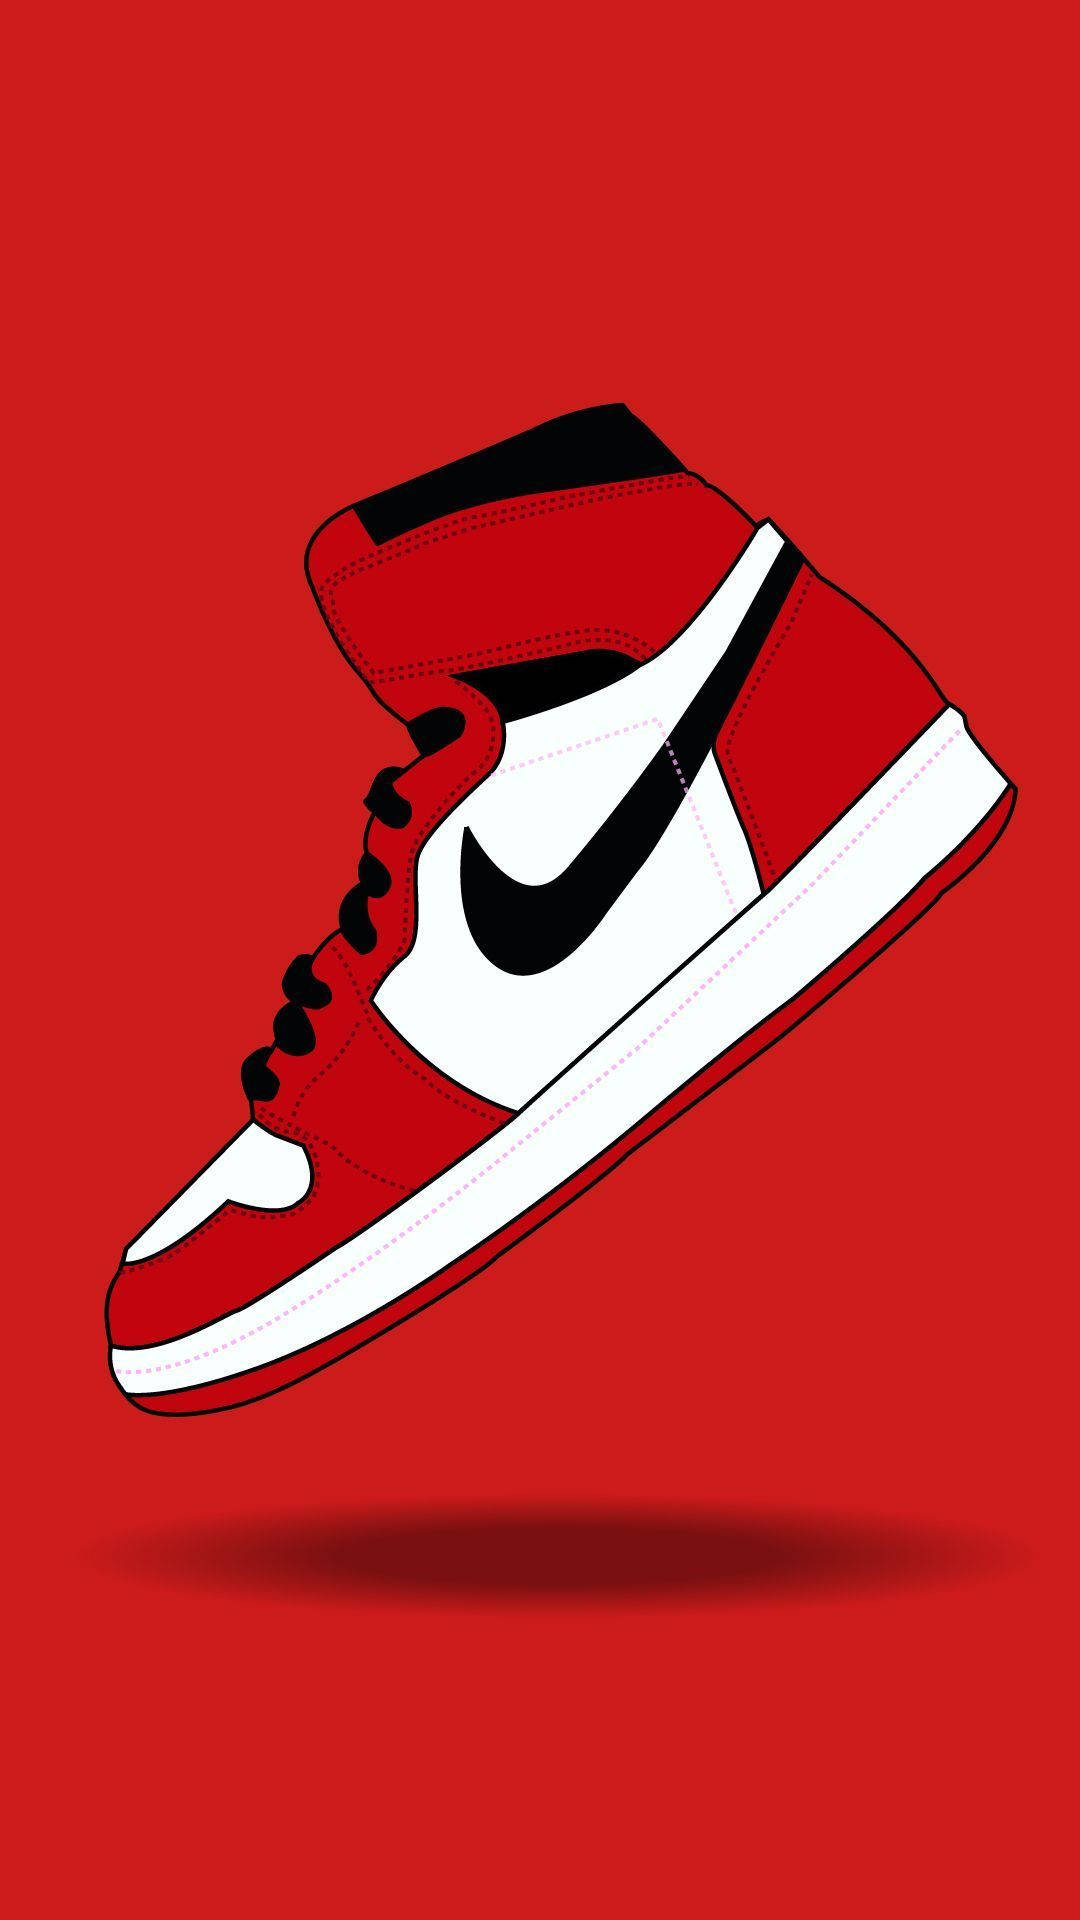 Unazapatilla Nike Roja Y Blanca Sobre Un Fondo Rojo. Fondo de pantalla